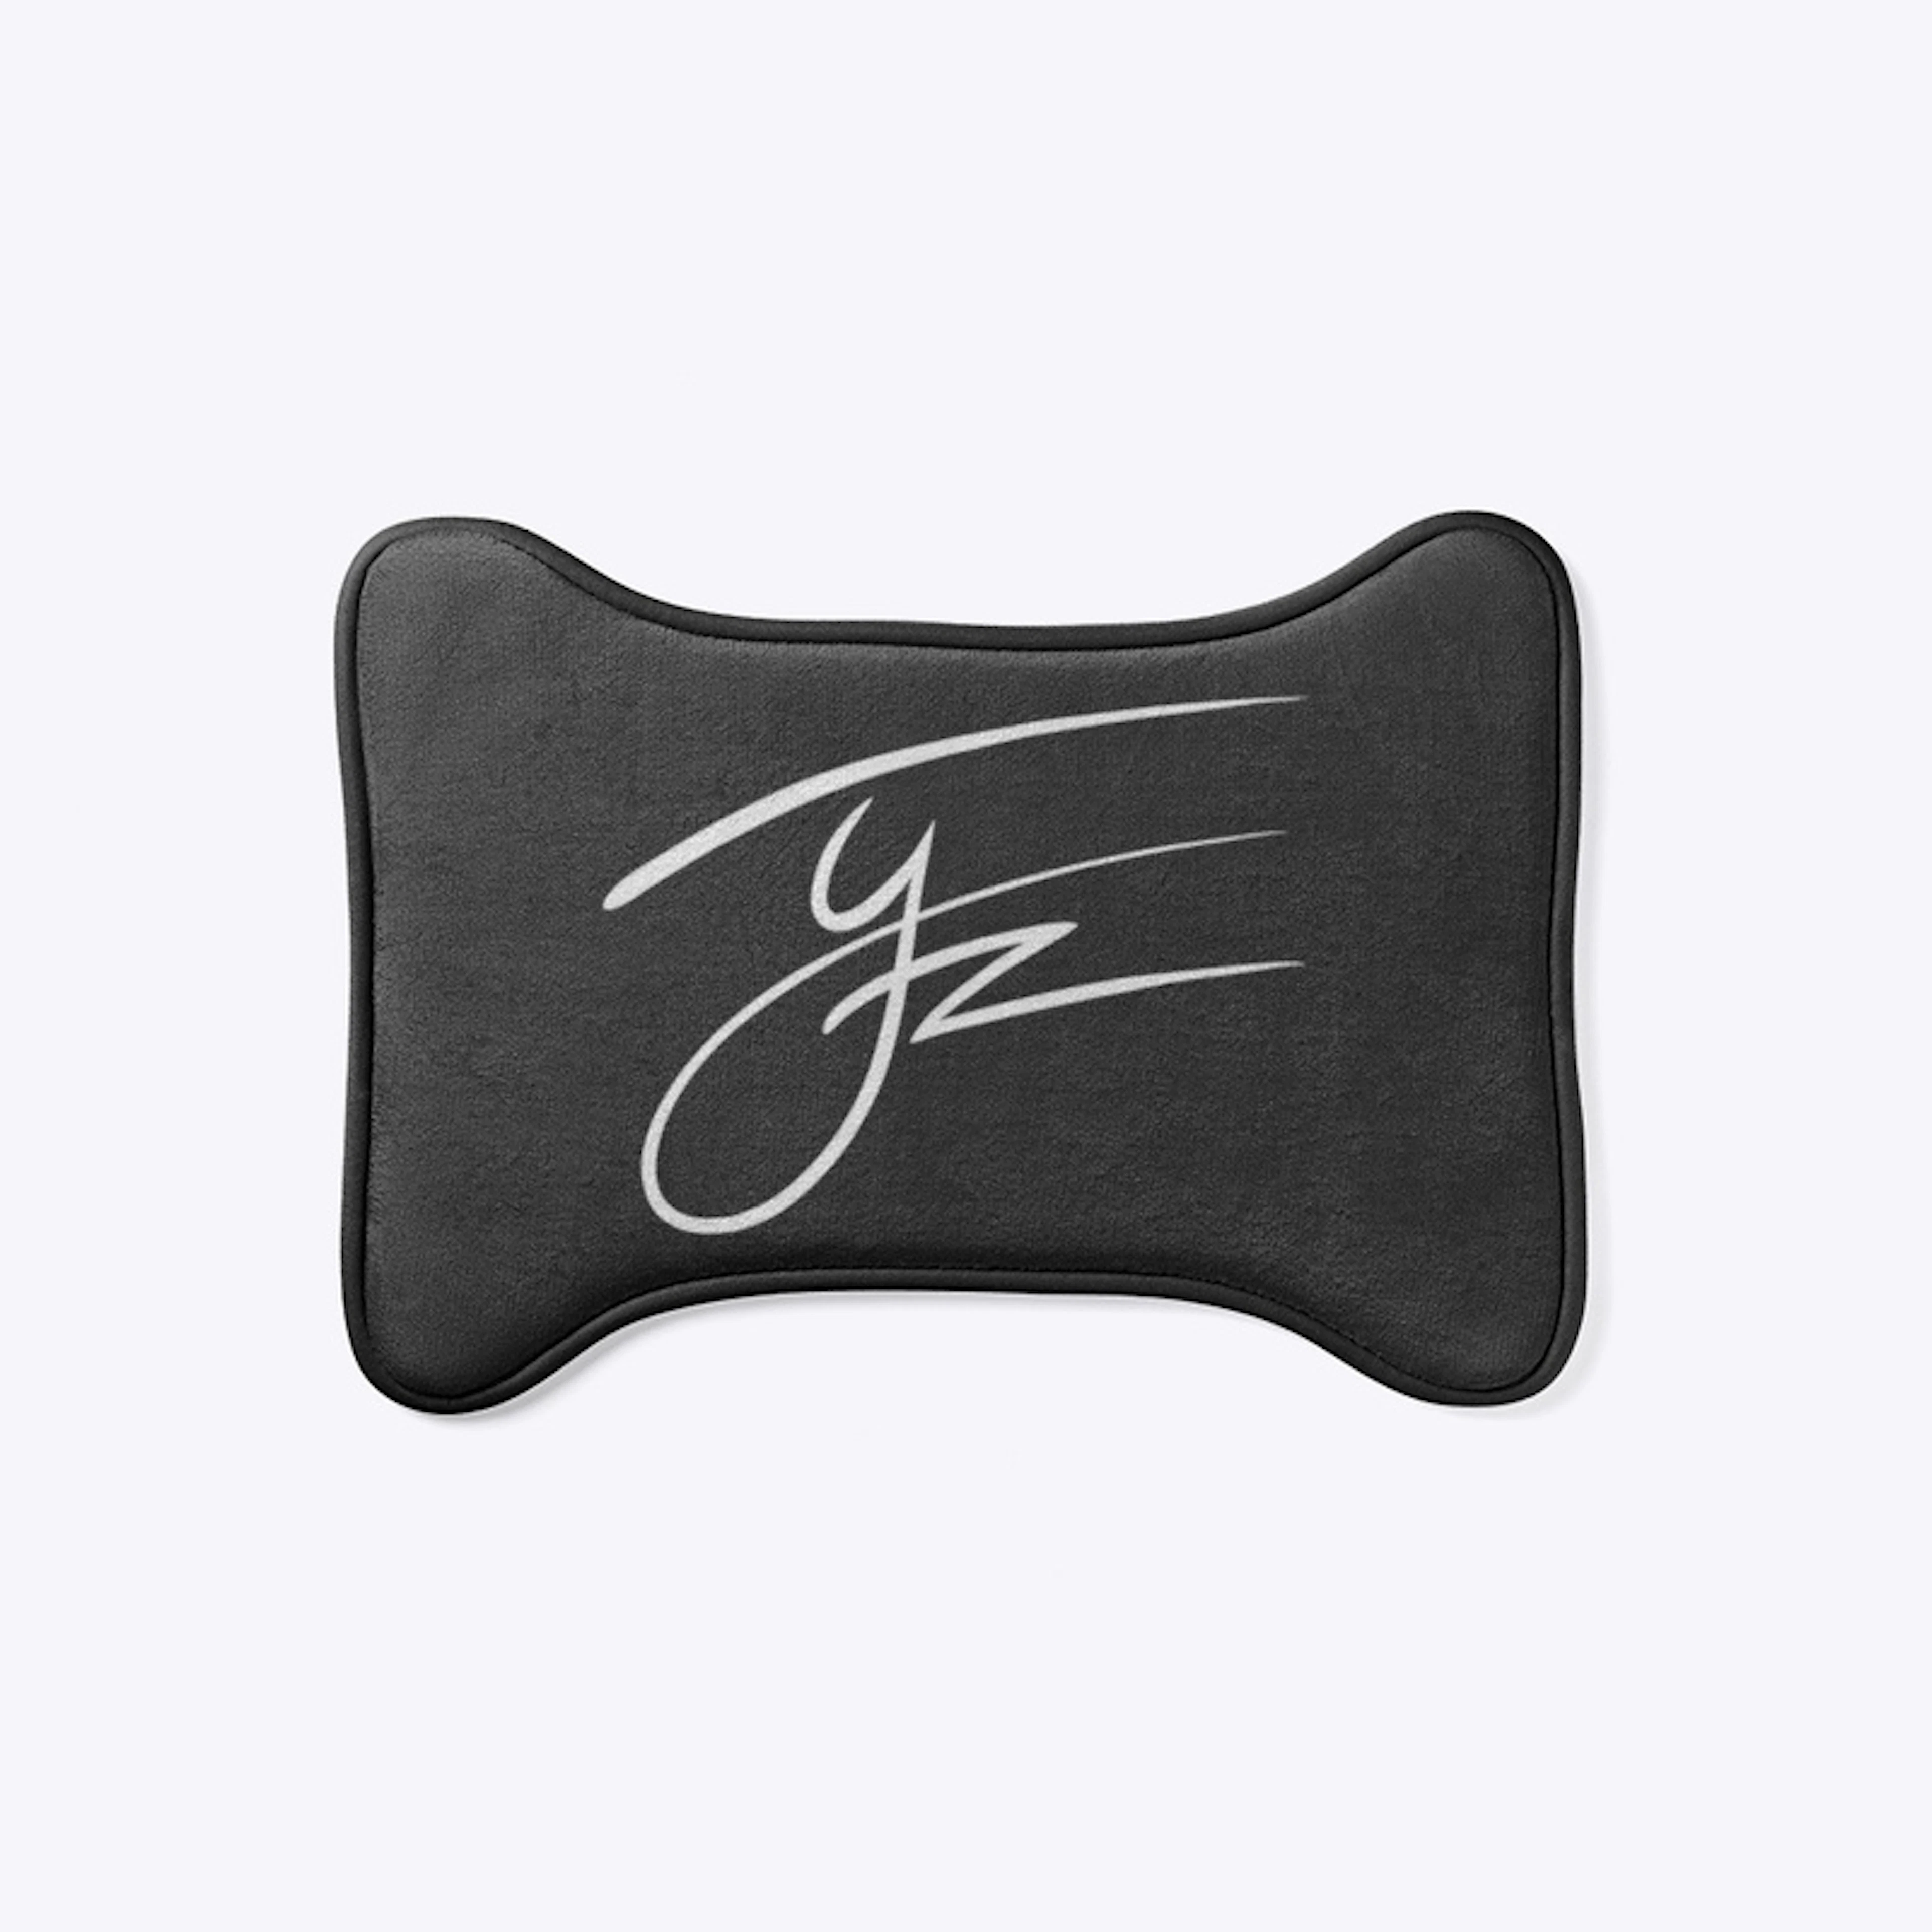 TJ Jackson - The "Signature" Series